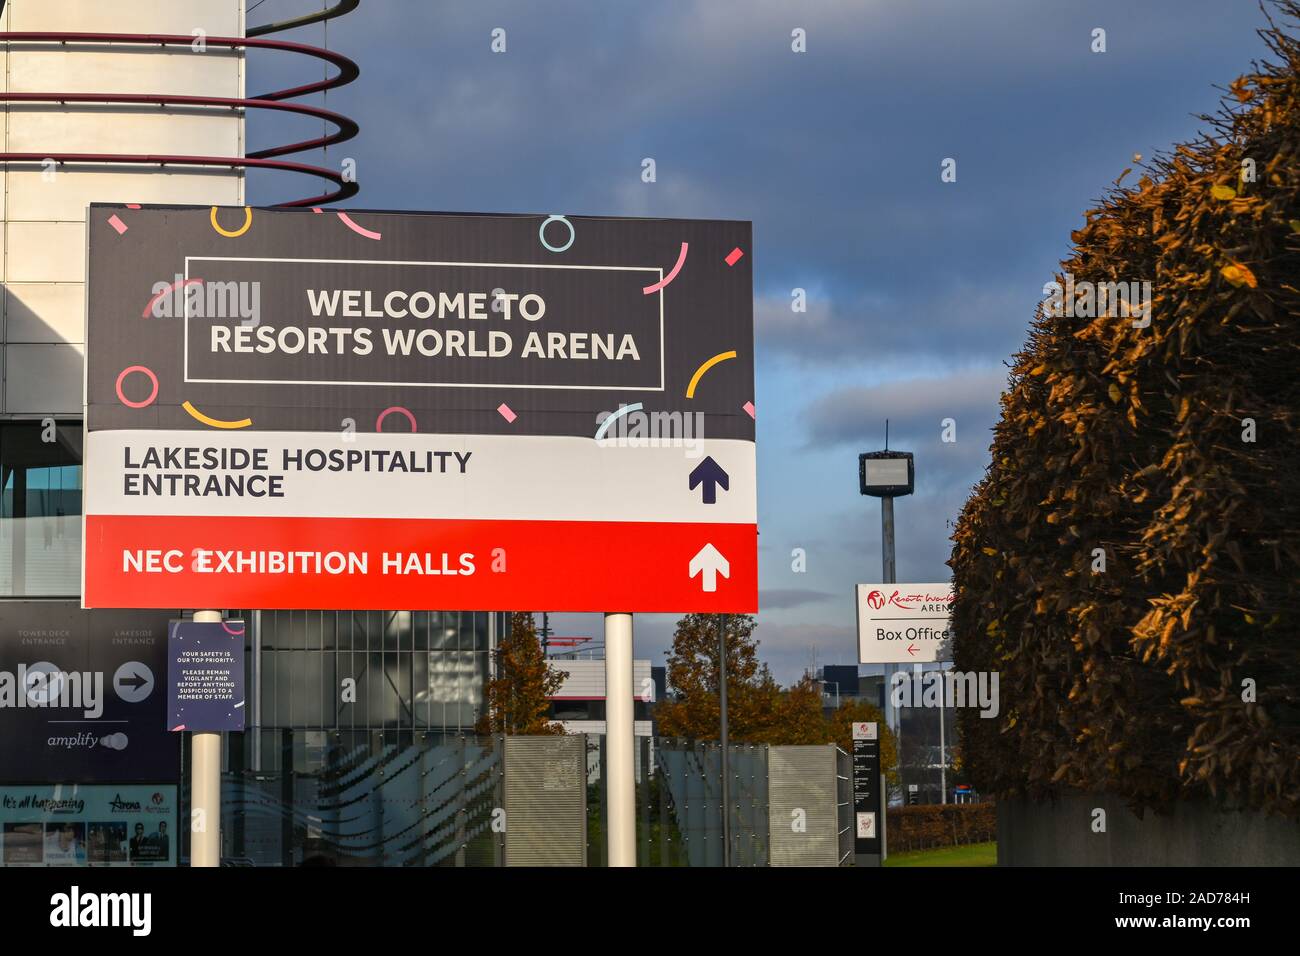 BIRMINGHAM, ENGLAND - Dezember 2019: Schild begrüßte die Besucher des Resorts World Arena, einen konzertsaal am Birmingham National Exhibition Centre. Stockfoto